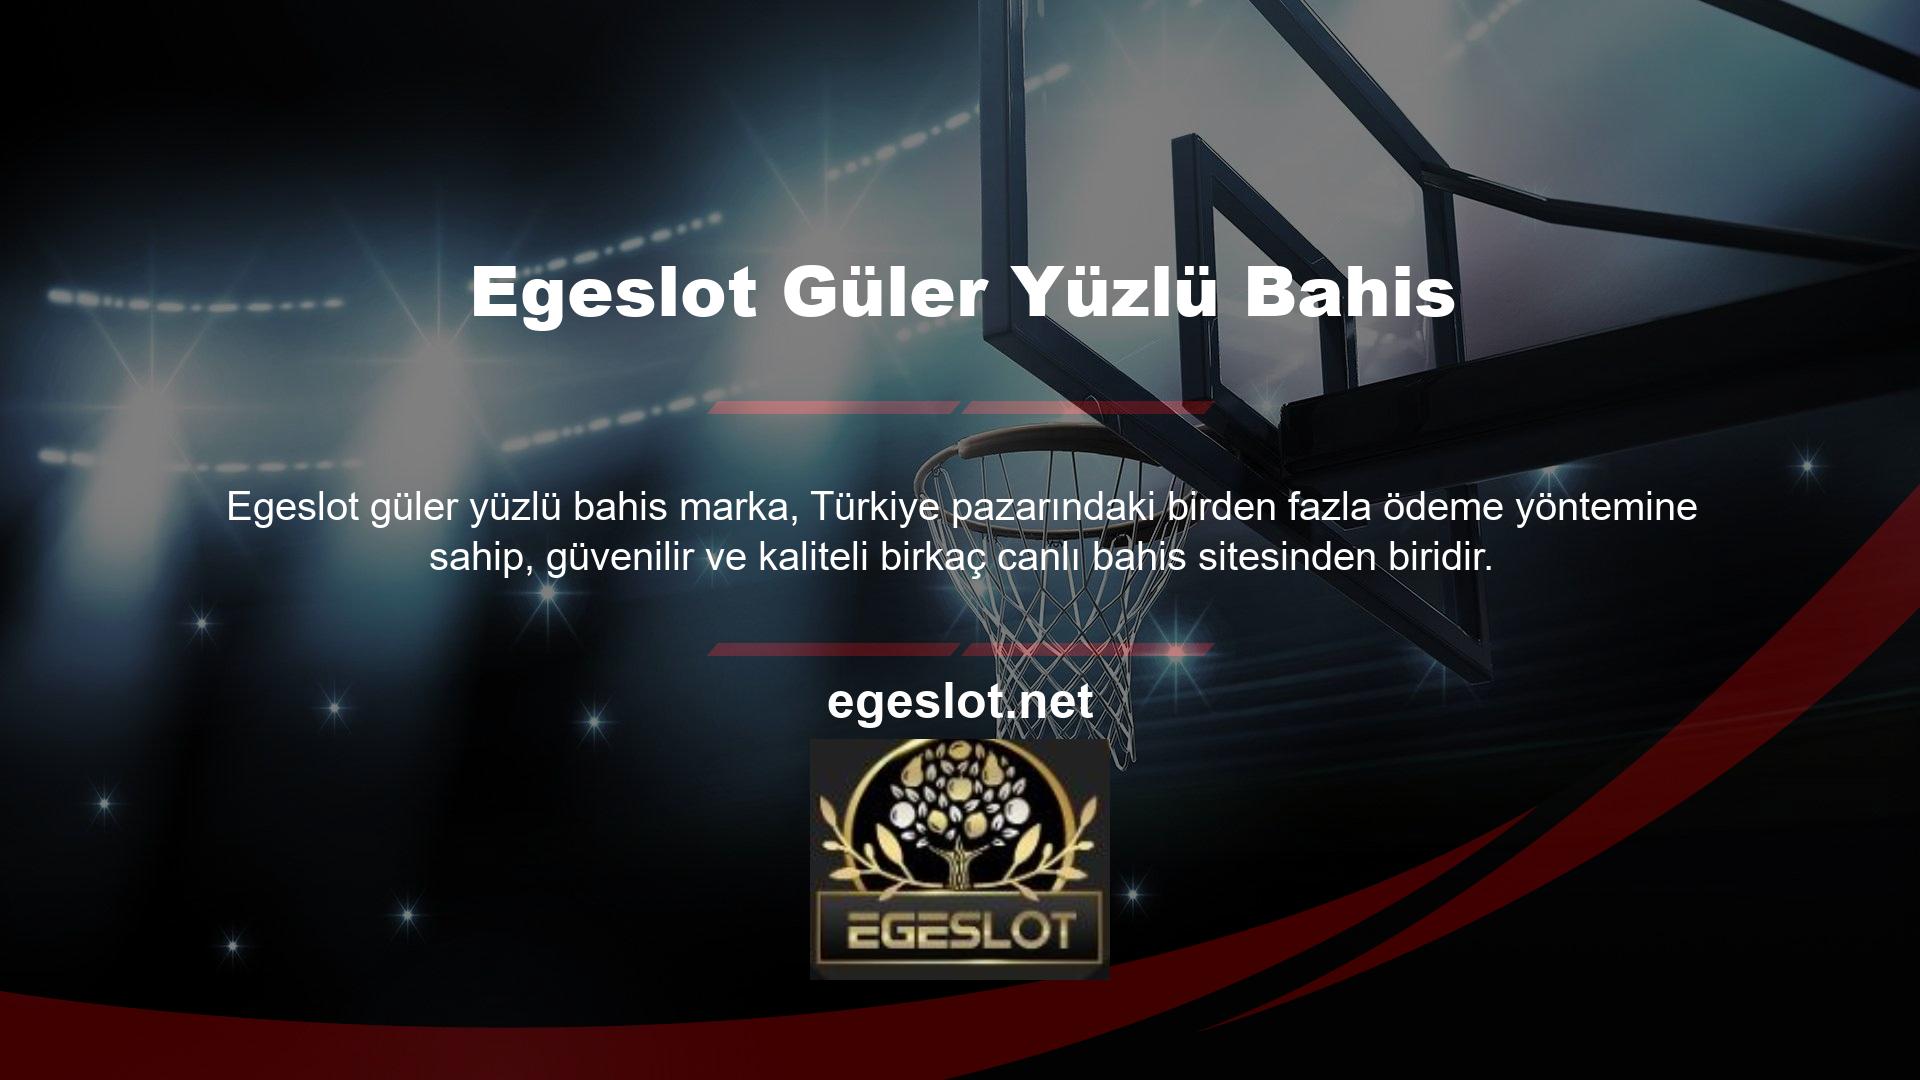 Kullanıcılarına bahis ve casino faaliyetleri sunan en tanınmış sitelerden biri Egeslot